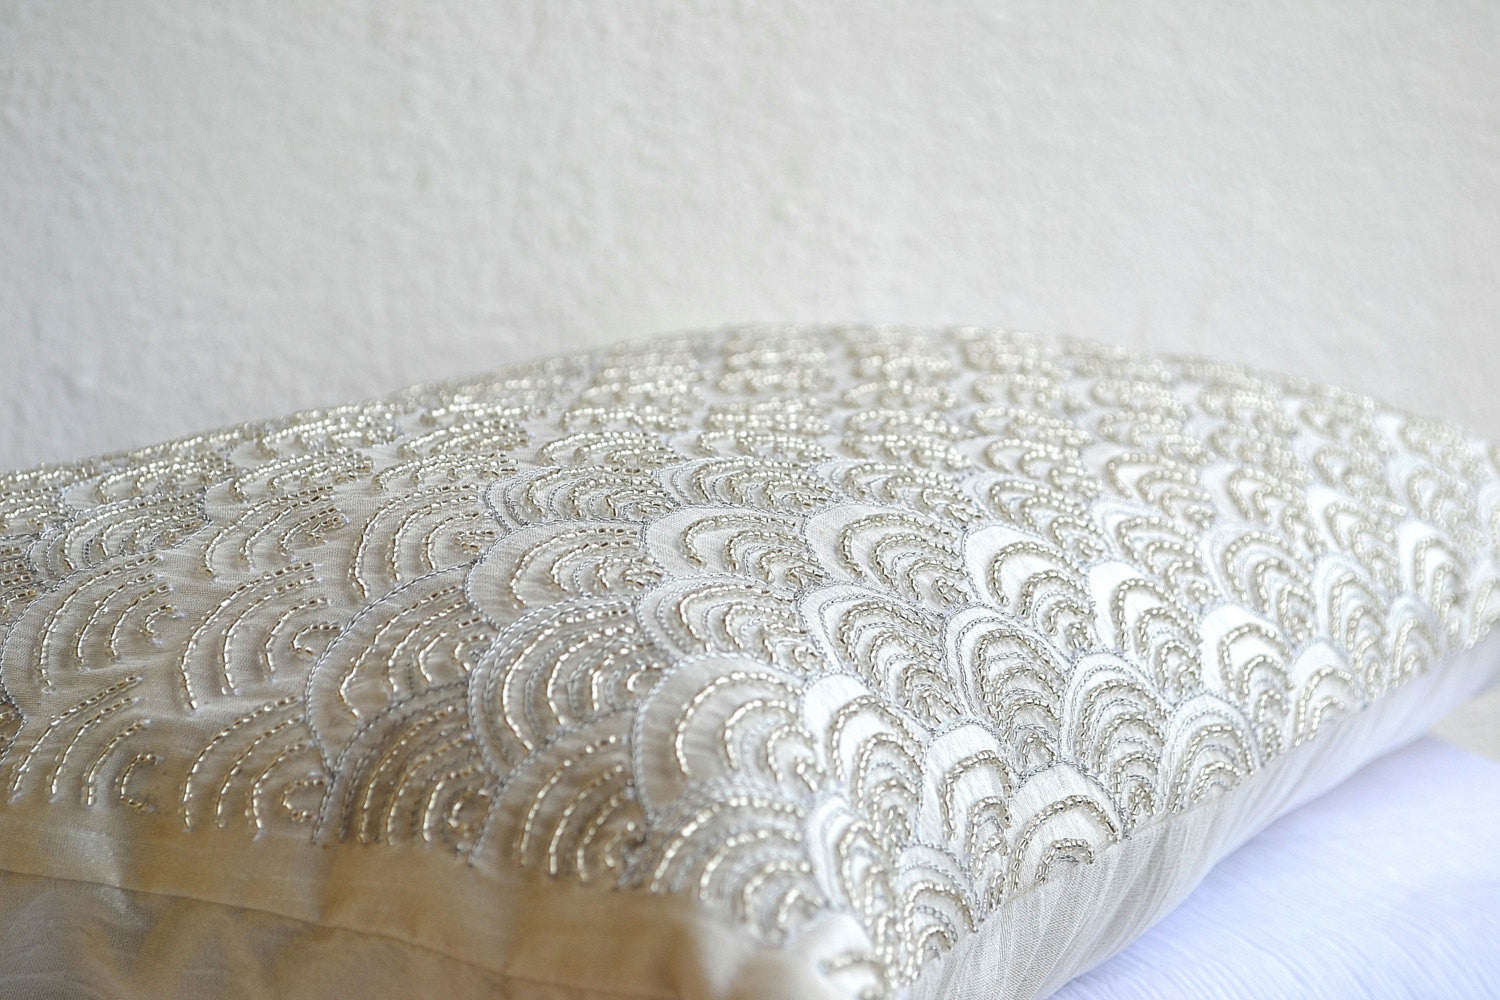 Handmade ivory white throw pillows with sashiko wave pattern